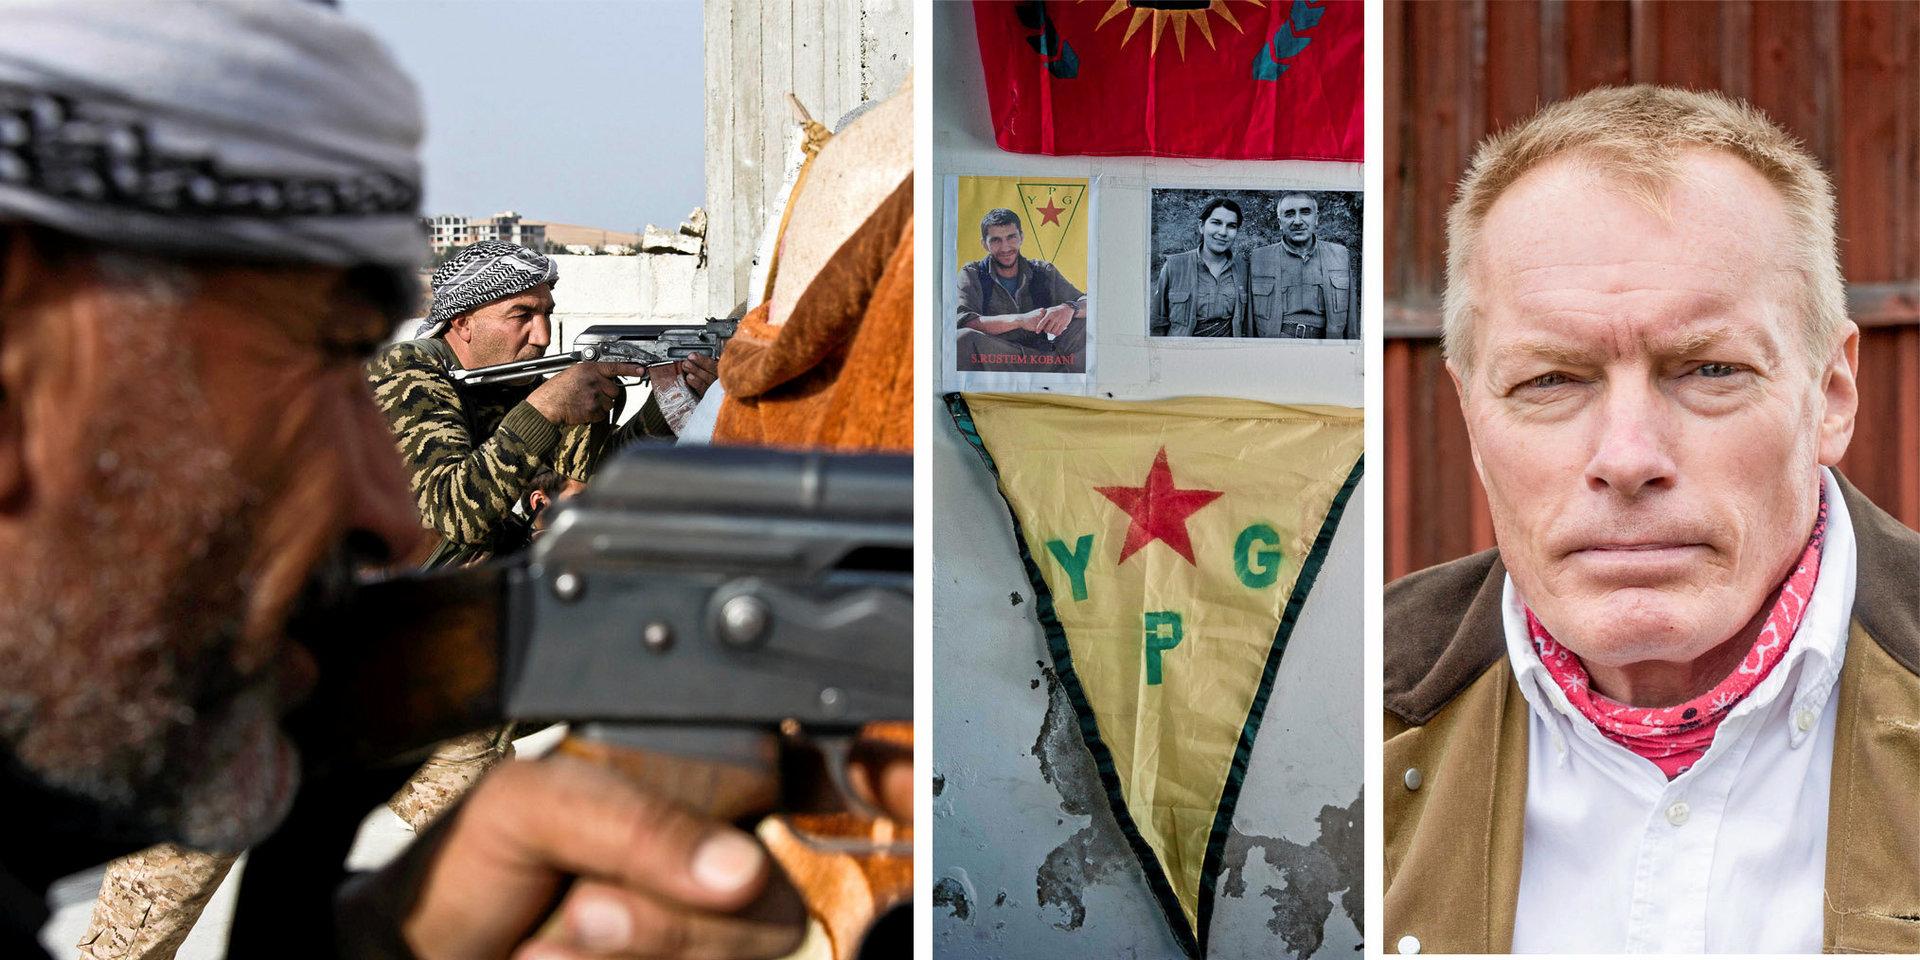 Cirka 900 europeiska IS-fångar hålls för närvarande av de syriska kurdiska skyddsstyrkorna YPG. Få länder vill ta hem dessa fångar. Detta är även ett svenskt problem, skriver Magnus Norell. 